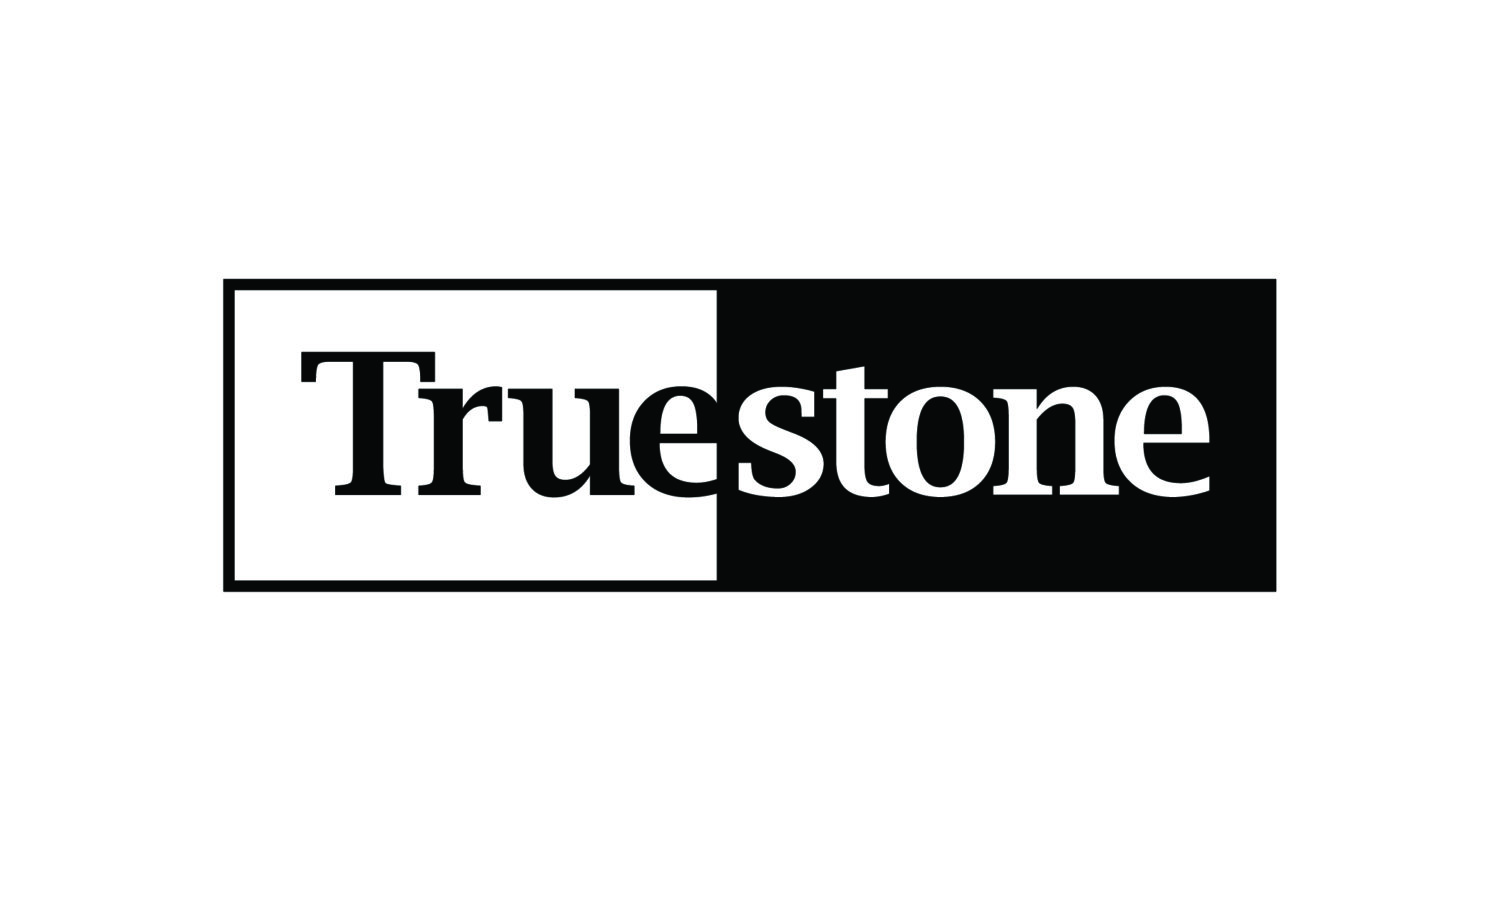 Truestone logo